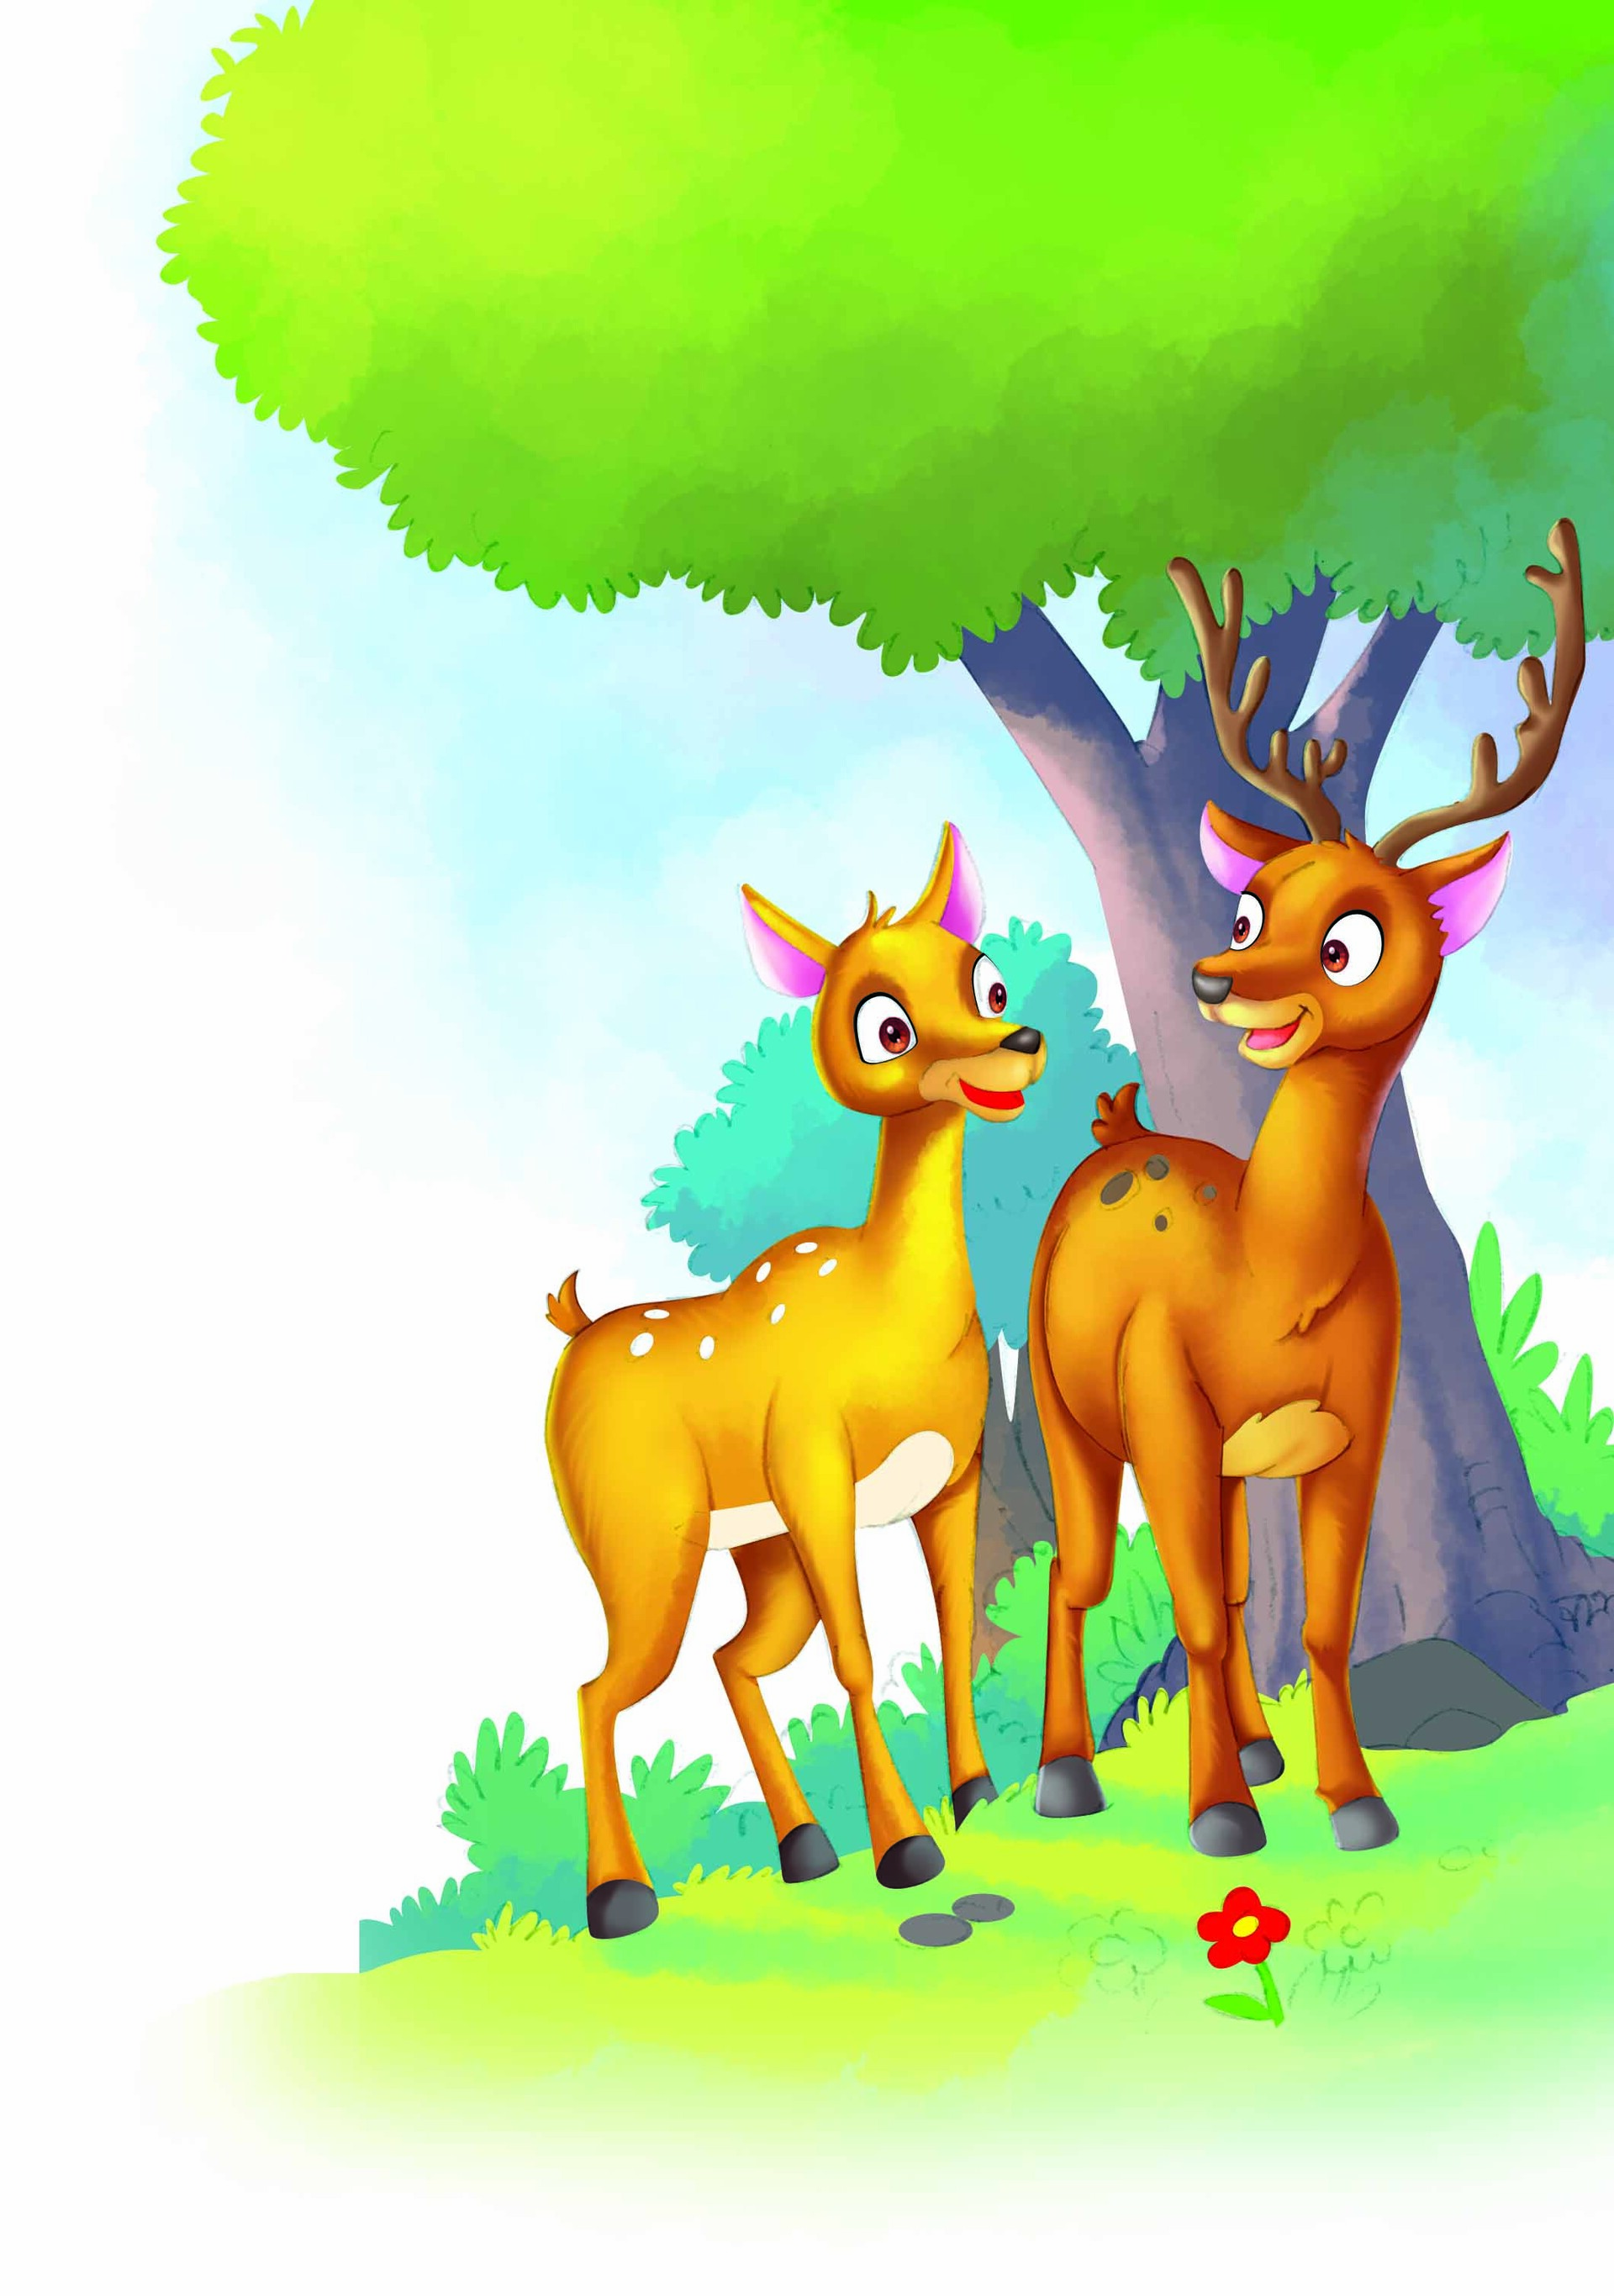 ArtStation - Golden deers cartoon